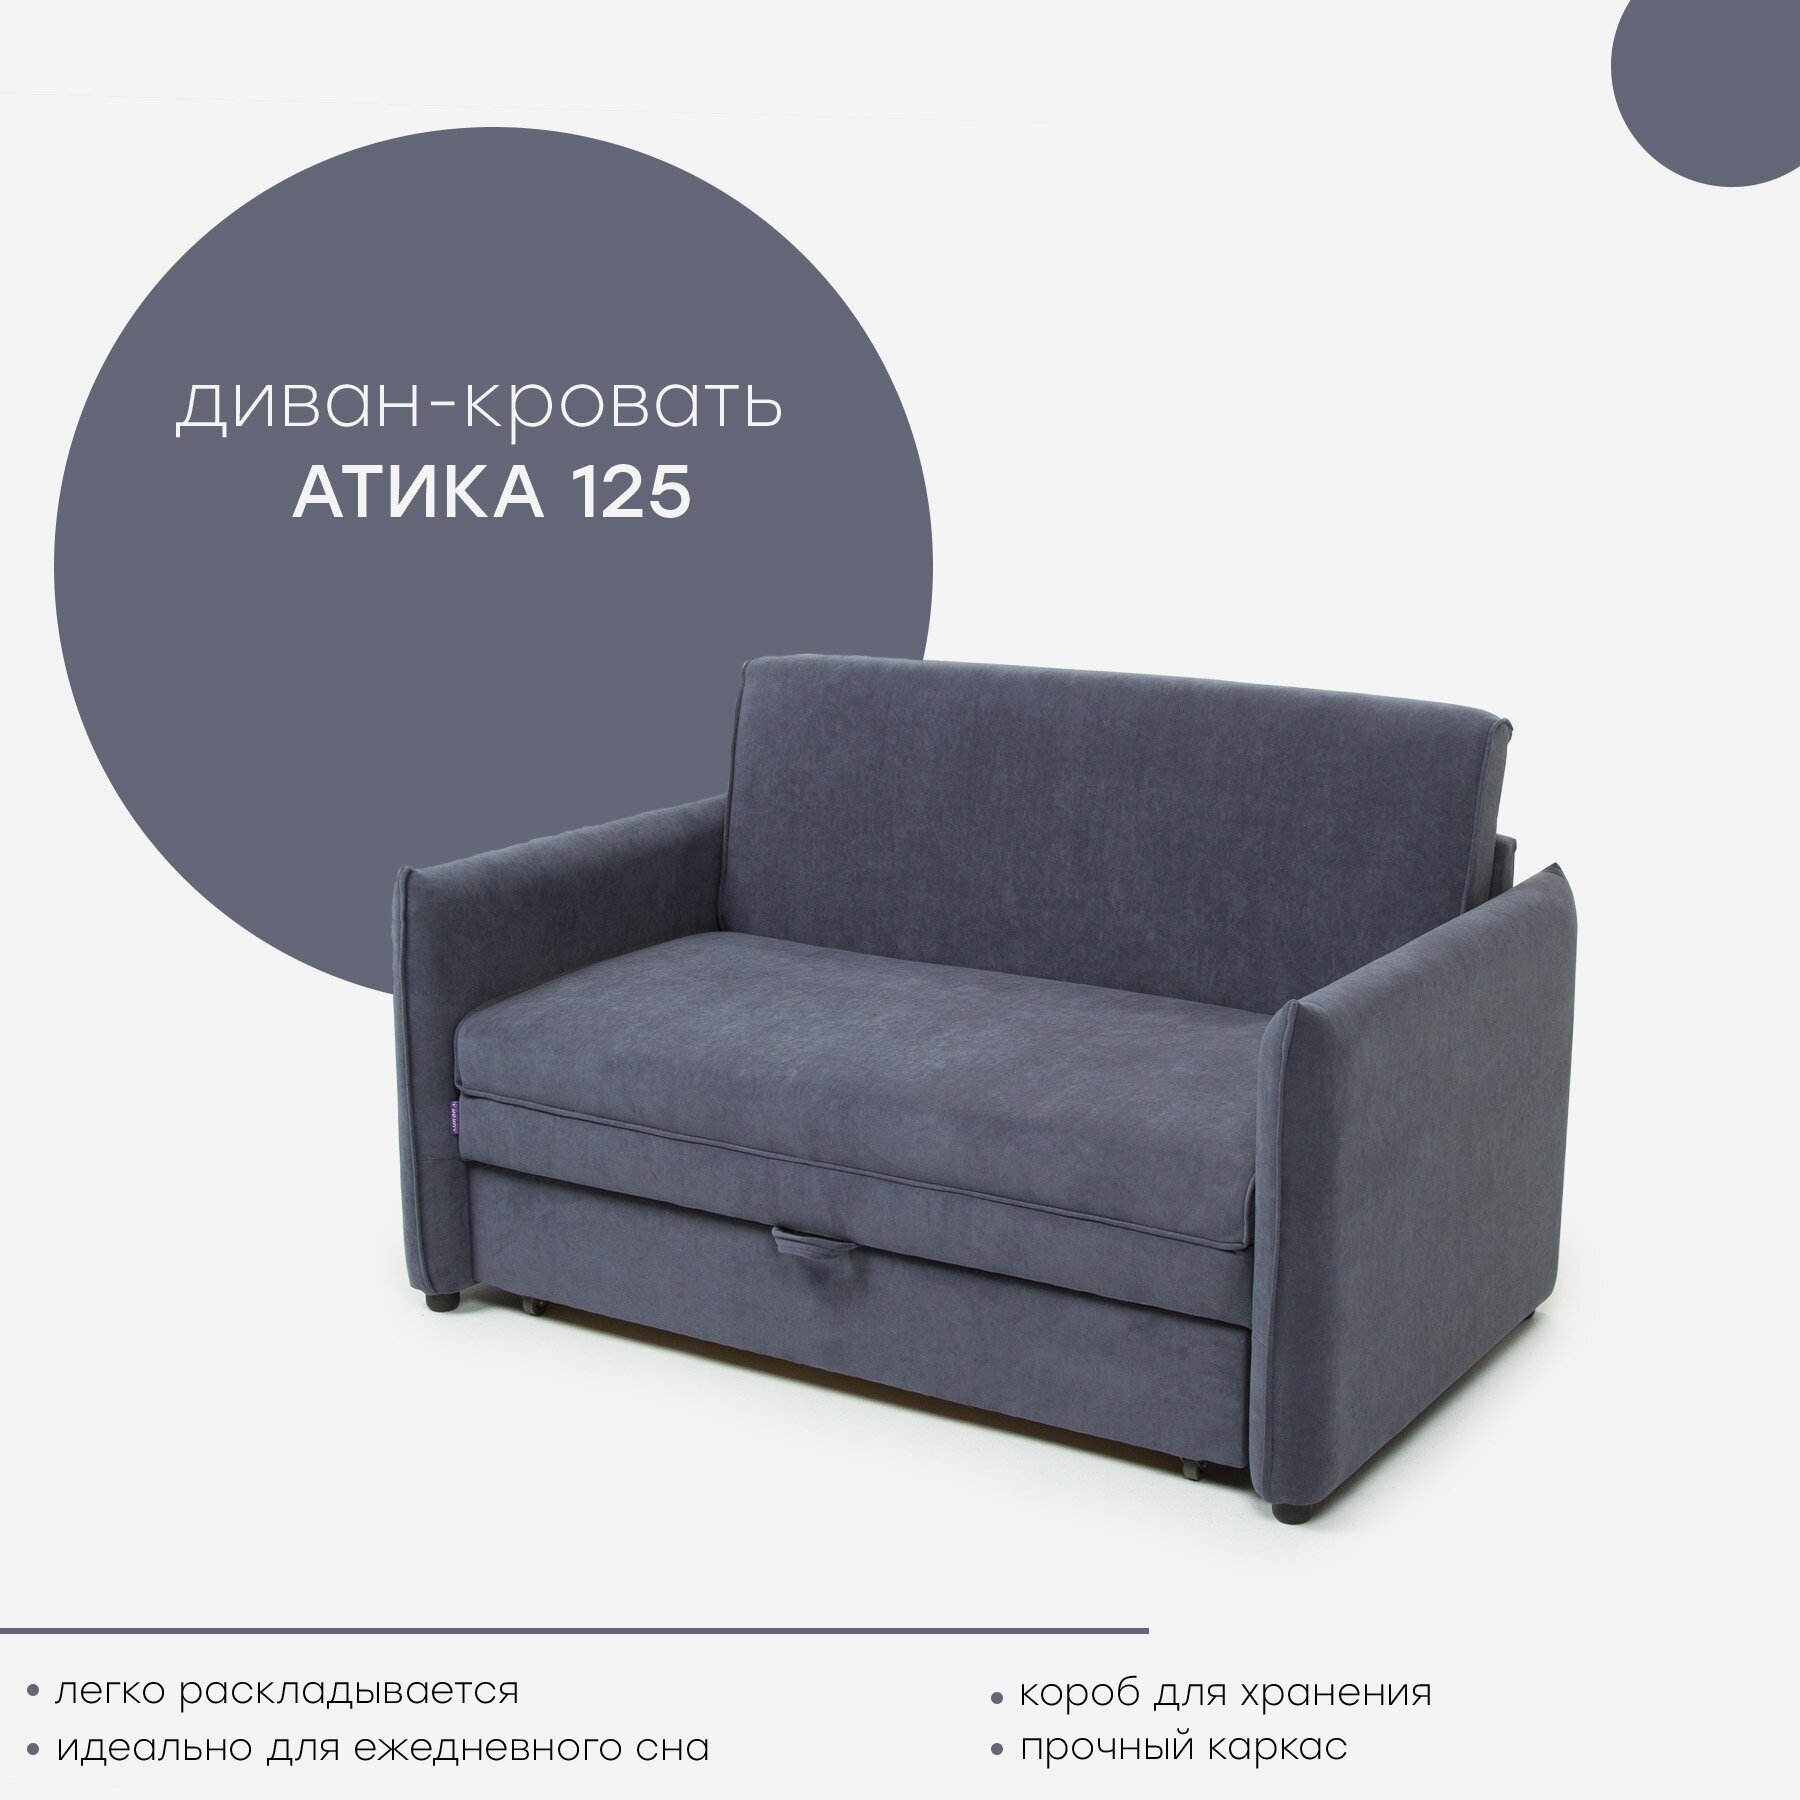 Диван прямой, Атика 125, компактный трехместный диван, механизм выкатной, 1460 × 910 × 880, цвет серый, Мебельная Фабрика Аврора